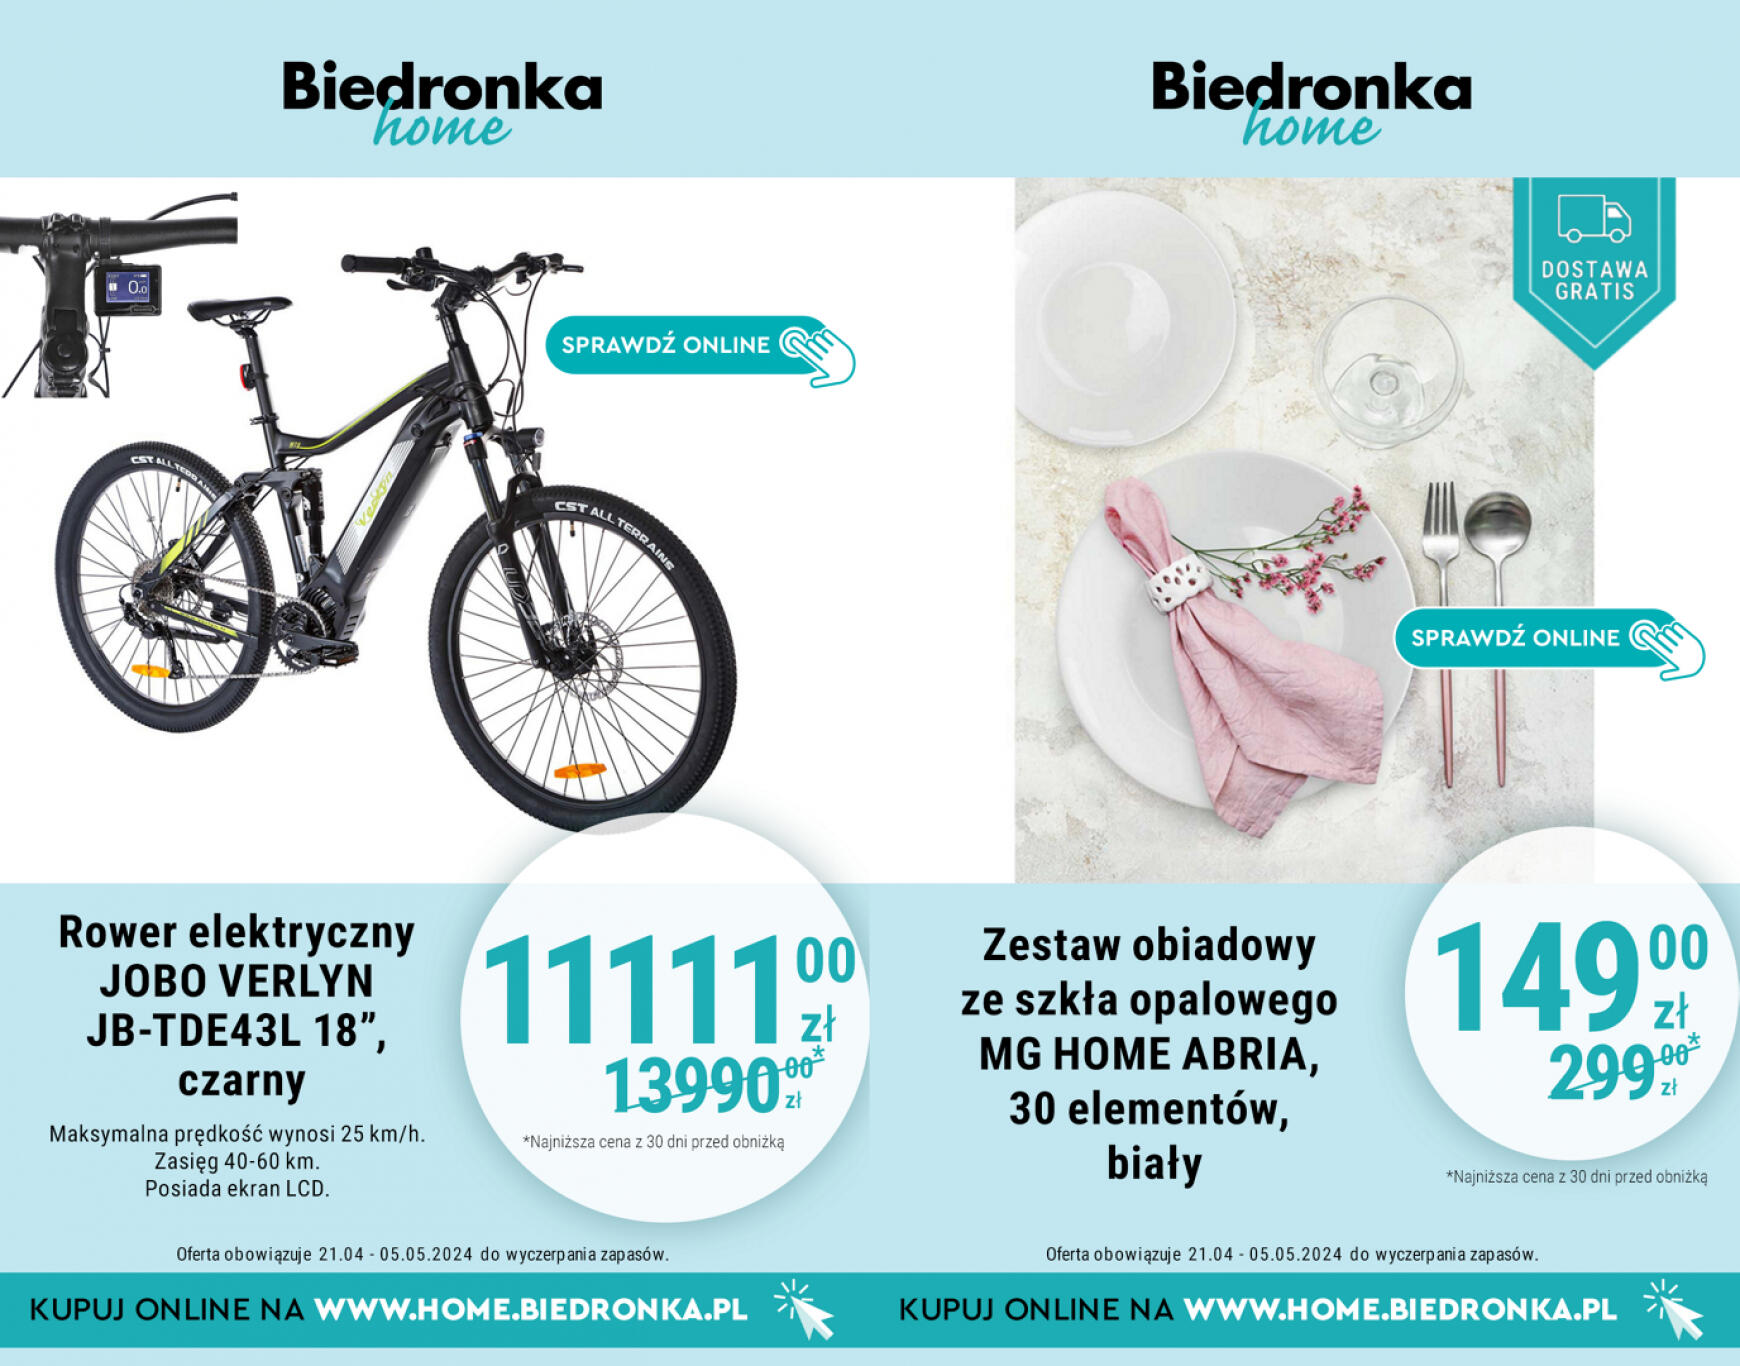 biedronka - Biedronka Home gazetka aktualna ważna od 21.04. - 05.05. - page: 6